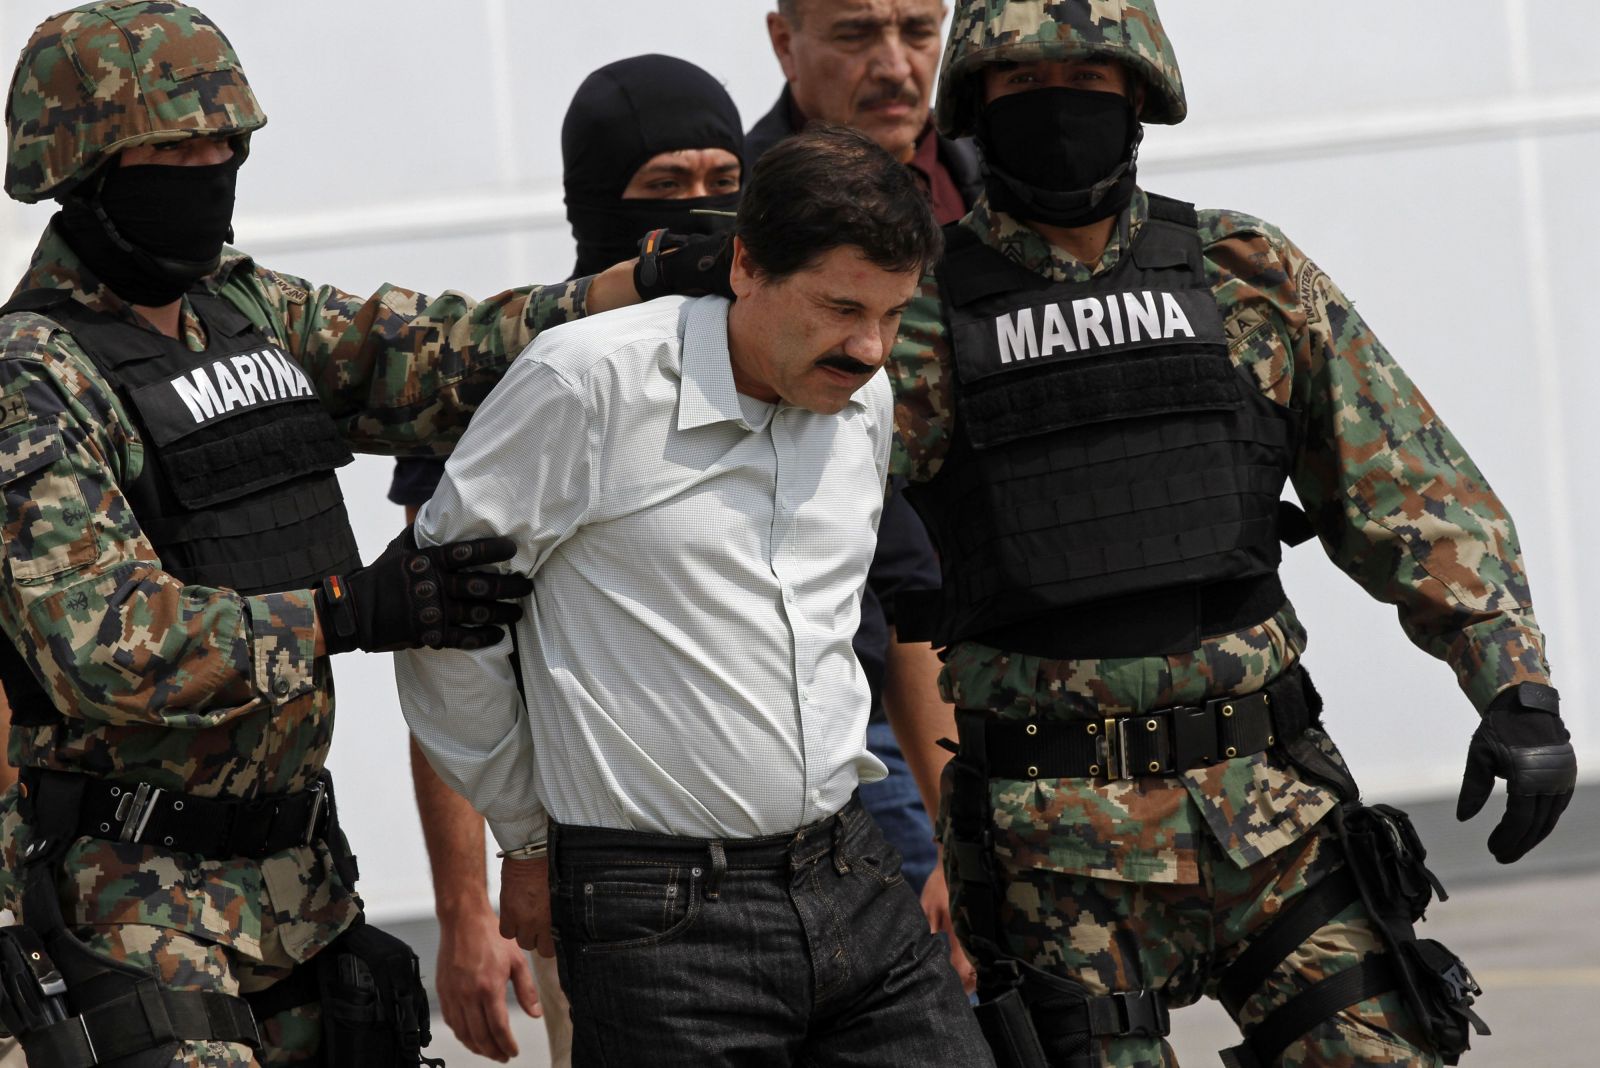 El Chapo mal dať mexickému prezidentovi úplatok 100 000 000 dolárov, vyhlásil pred súdom jeho blízky spolupracovník